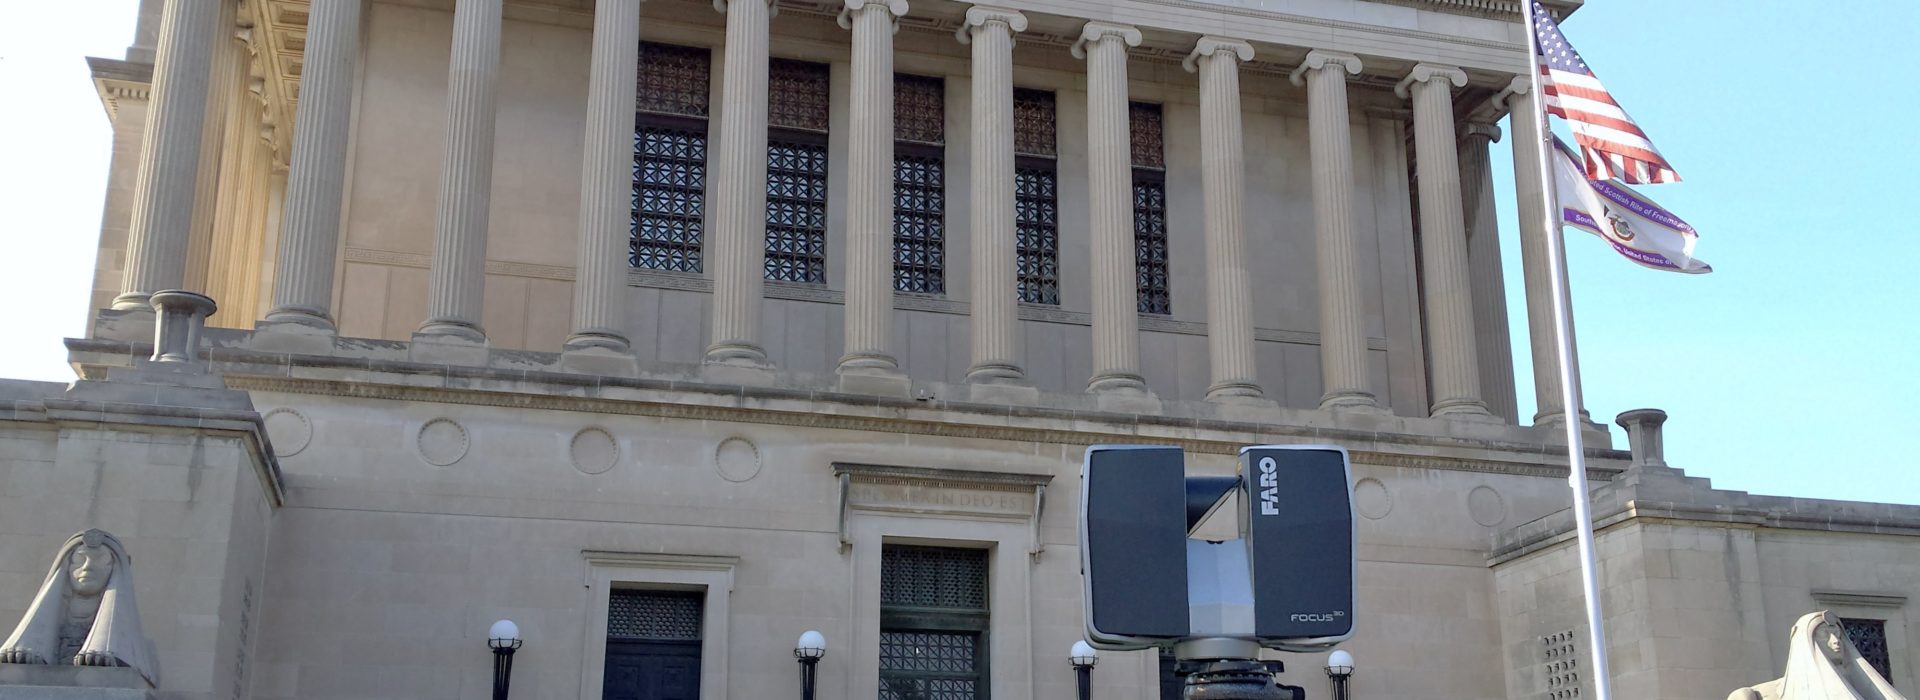 Laser scanning historic building